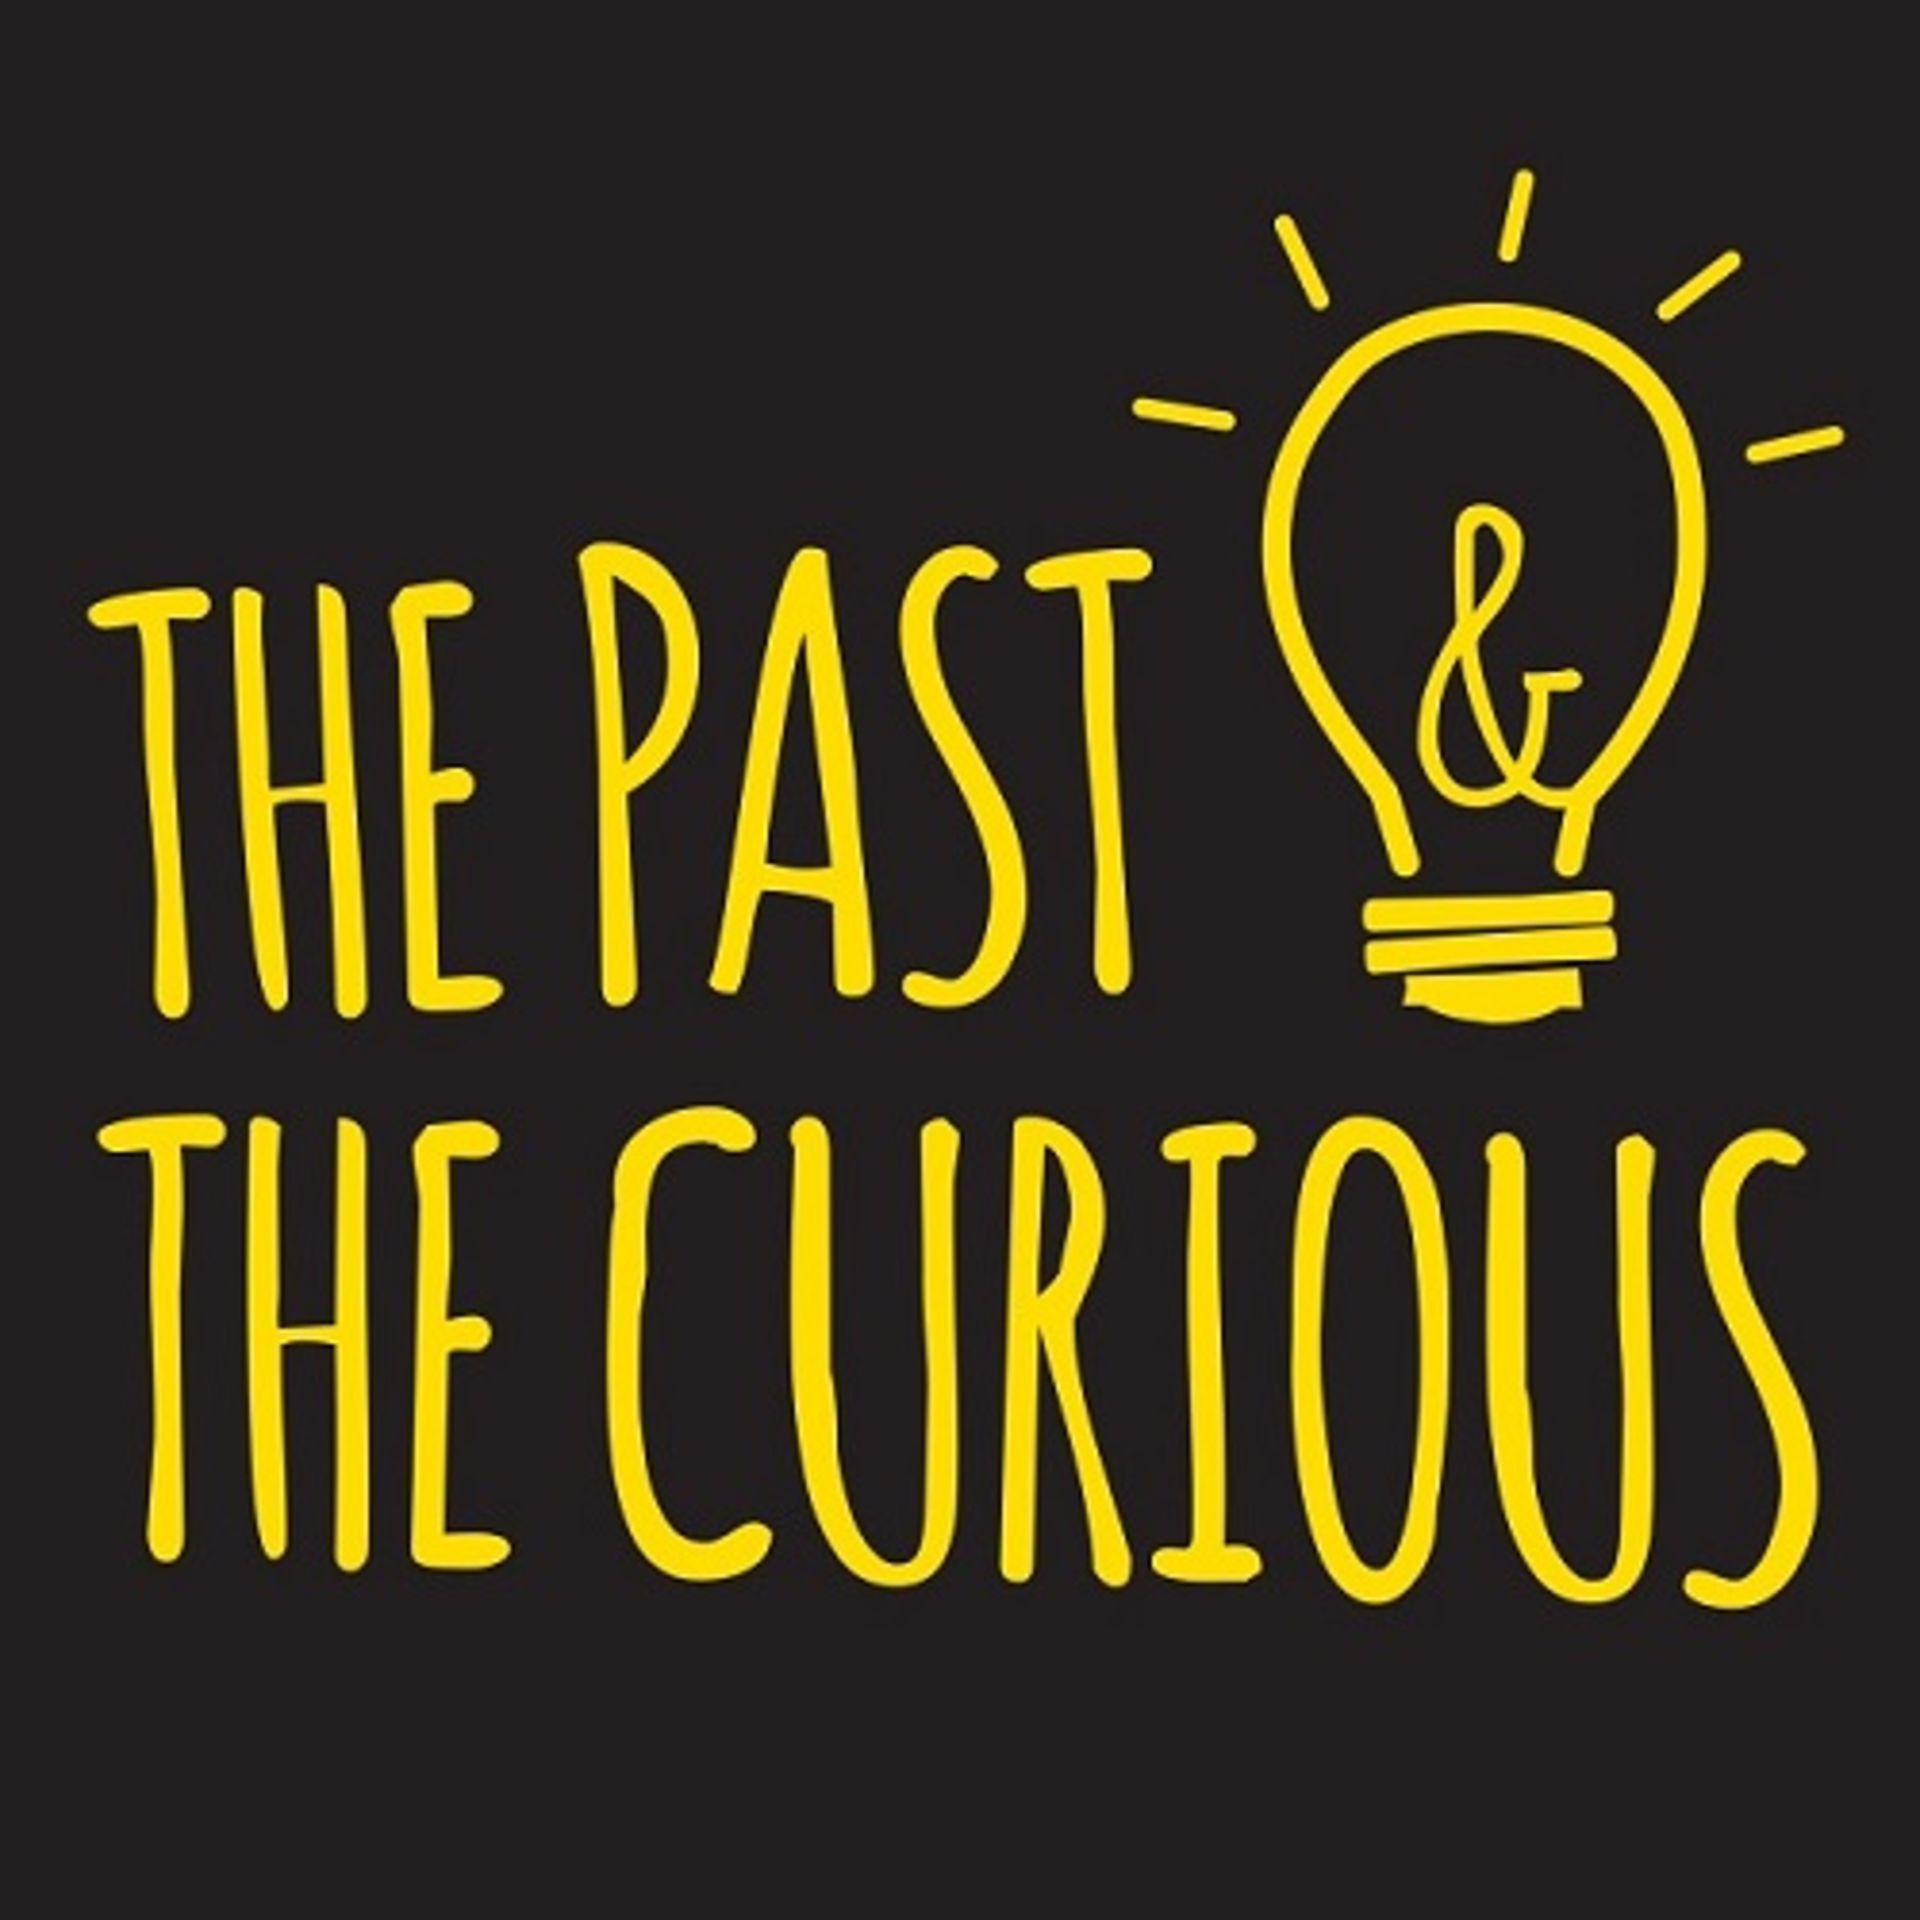  پادکست تقویت زبان انگلیسی the-past-the-curious